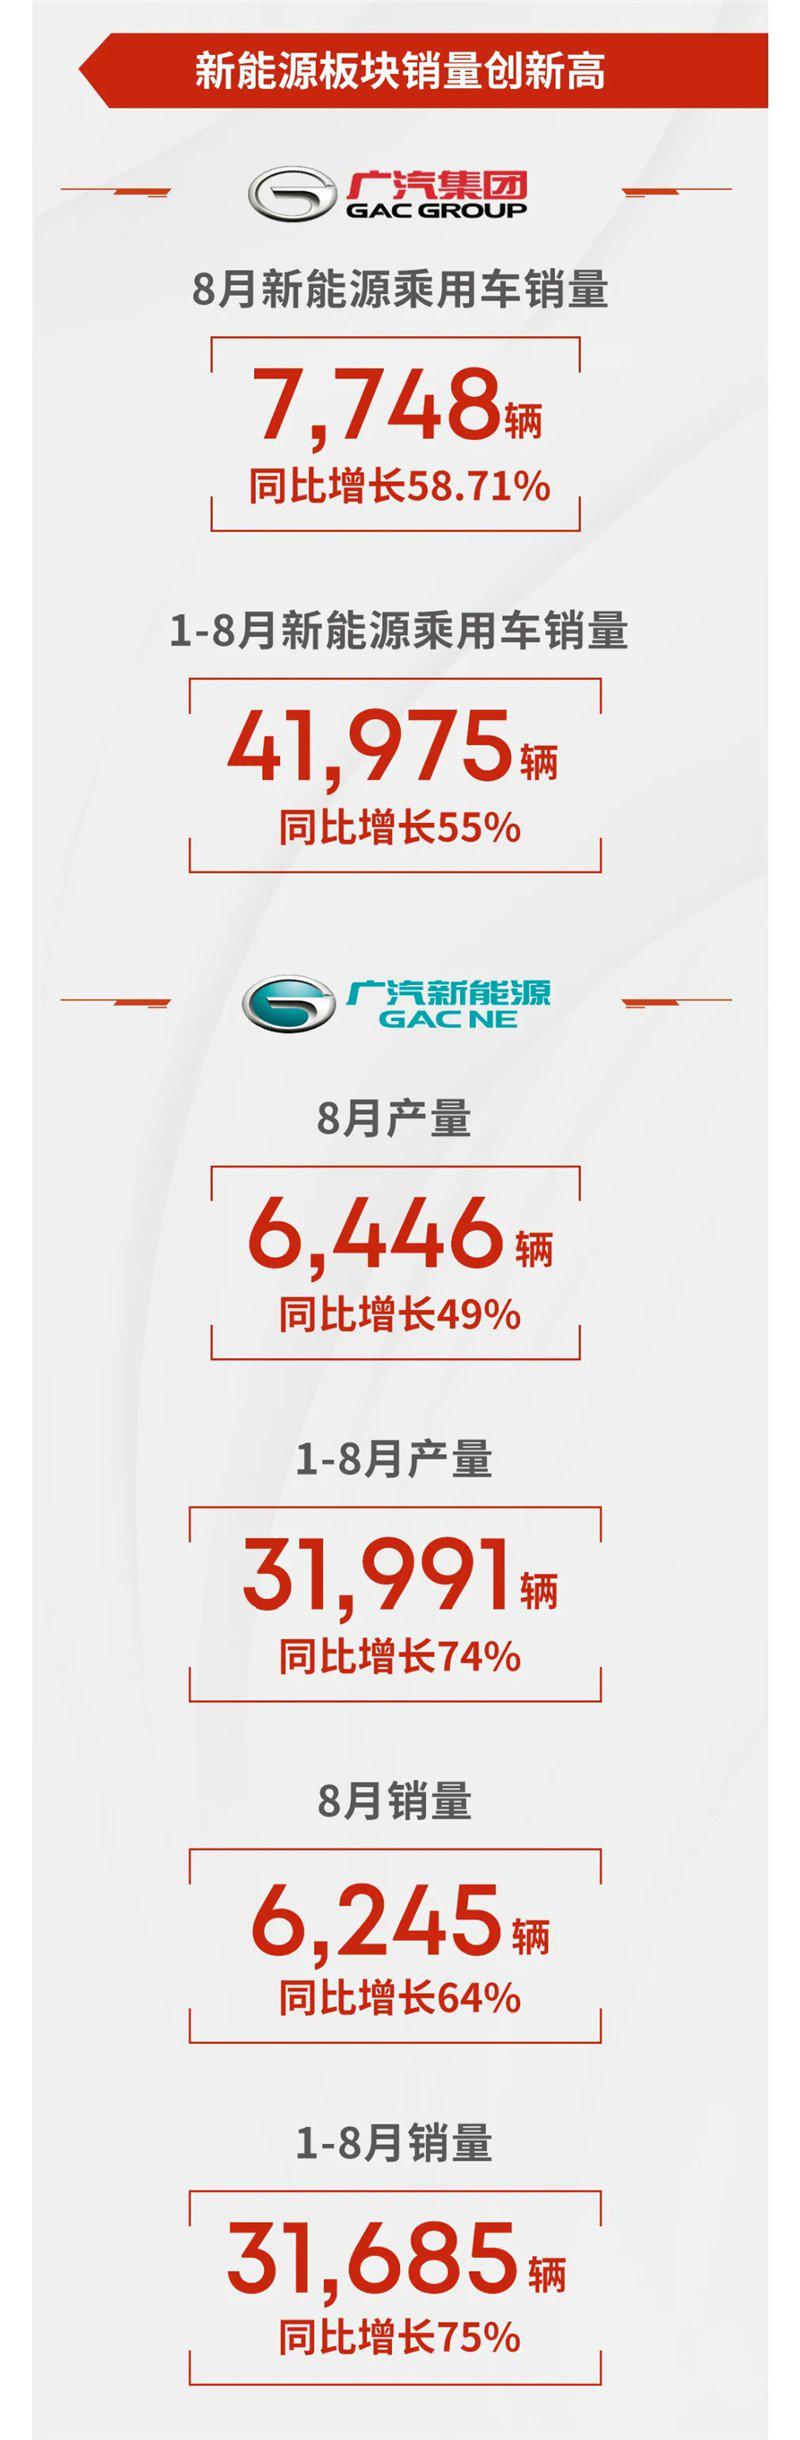 广汽集团8月新能源乘用车销量7748辆，同比增长58.71%